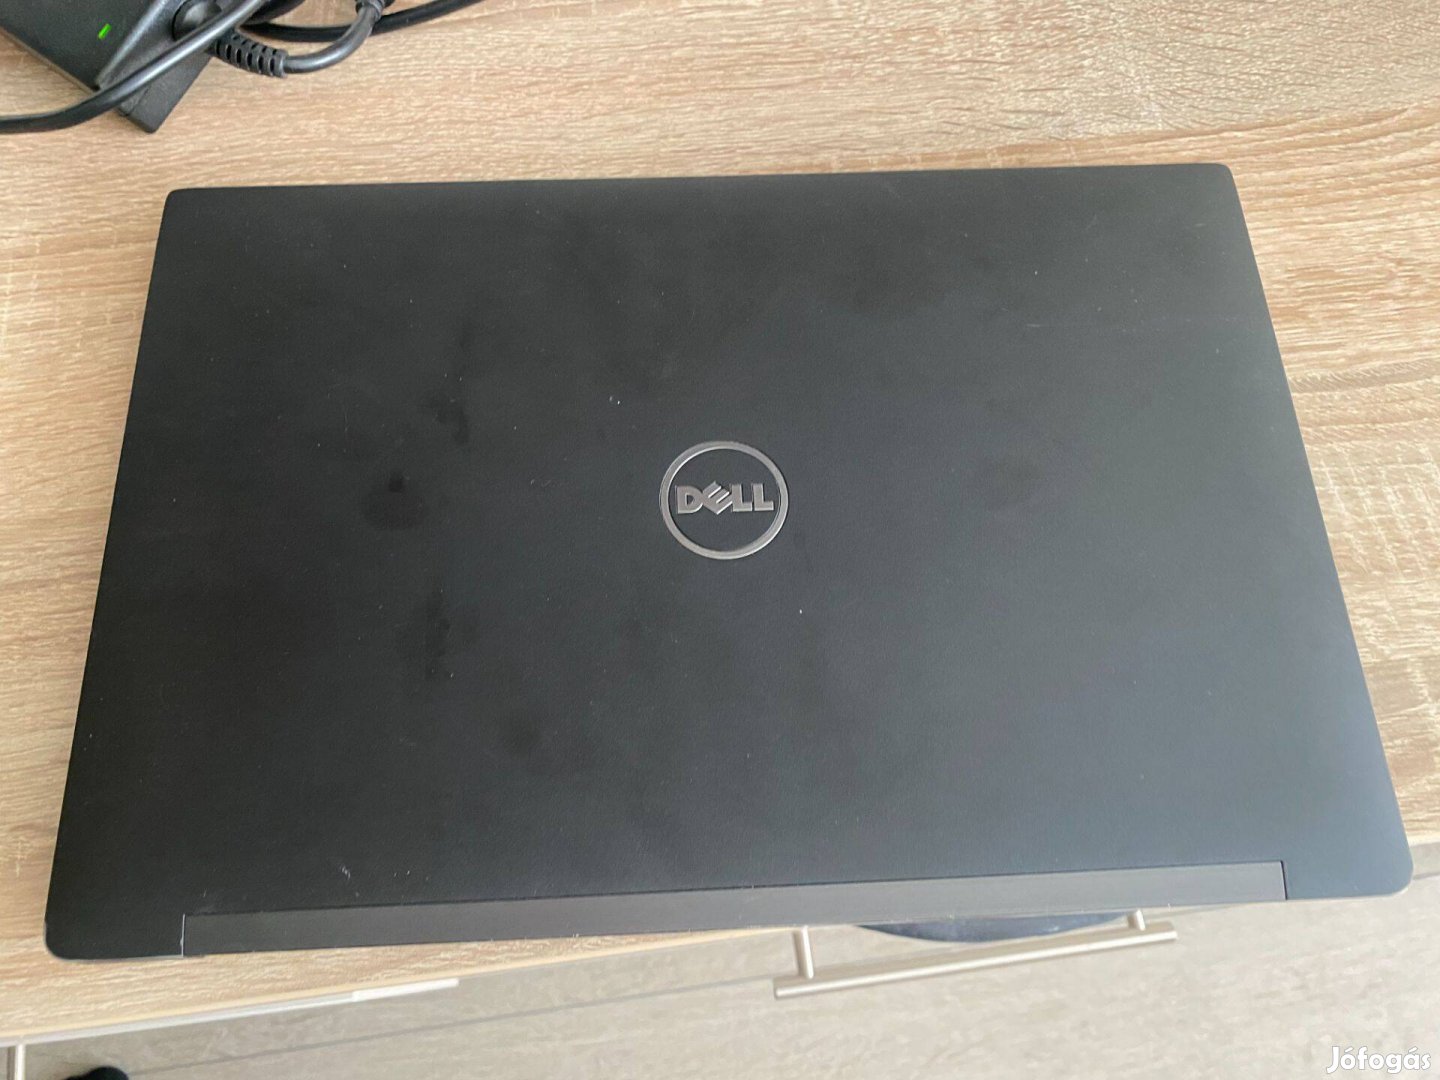 Dell E7480 Laptop i5-7300 8gb ram 128gb ssd sim kártyás 3 hó garancia